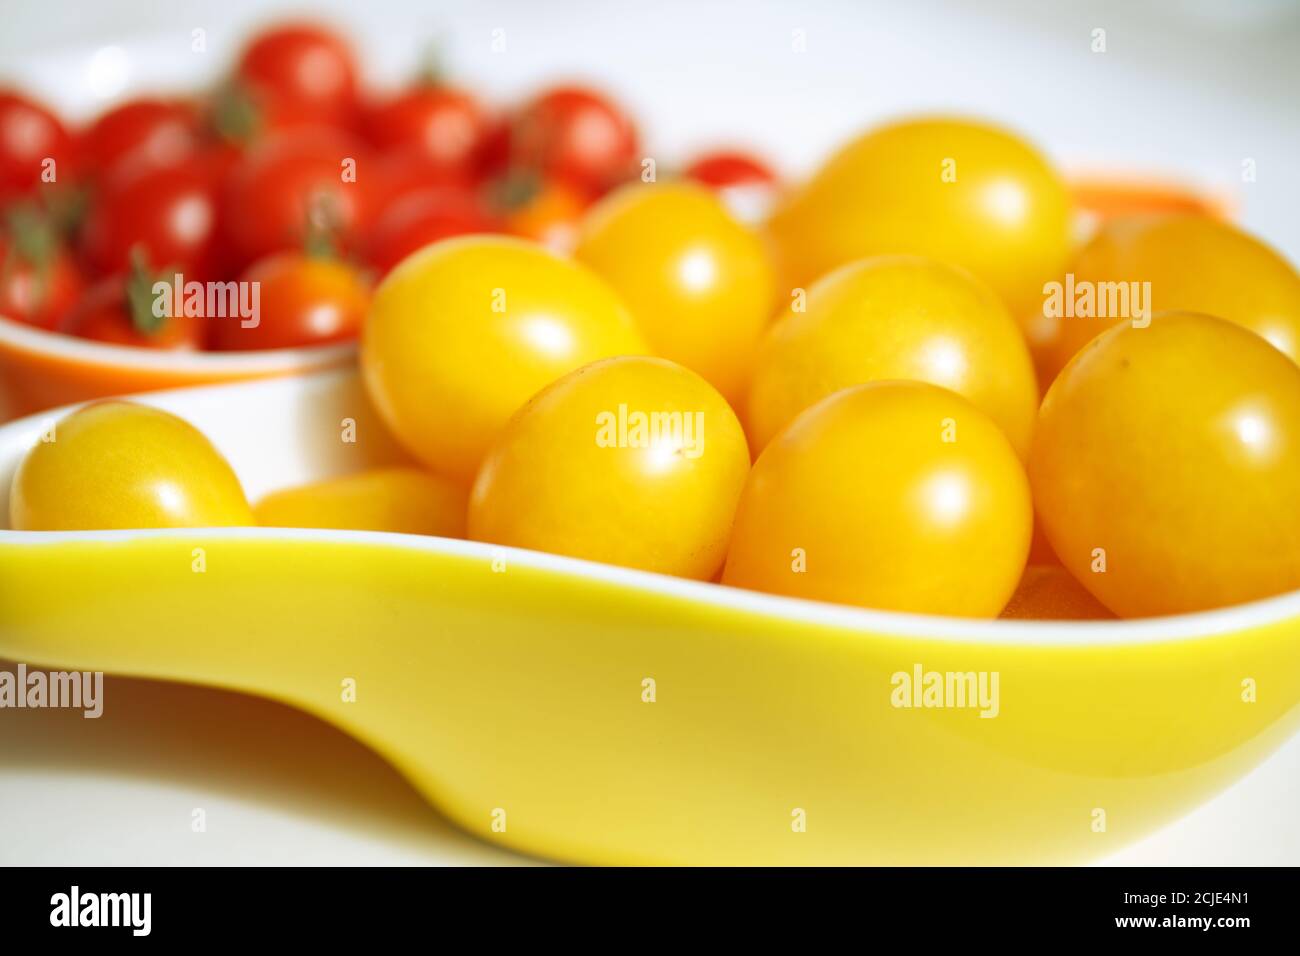 Pomodori ciliegini gialli e rossi. I pomodori ciliegini gialle si trovano in una ciotola gialla contro uno sfondo sfocato di piccoli pomodori rossi. Collezione autunnale di ve Foto Stock